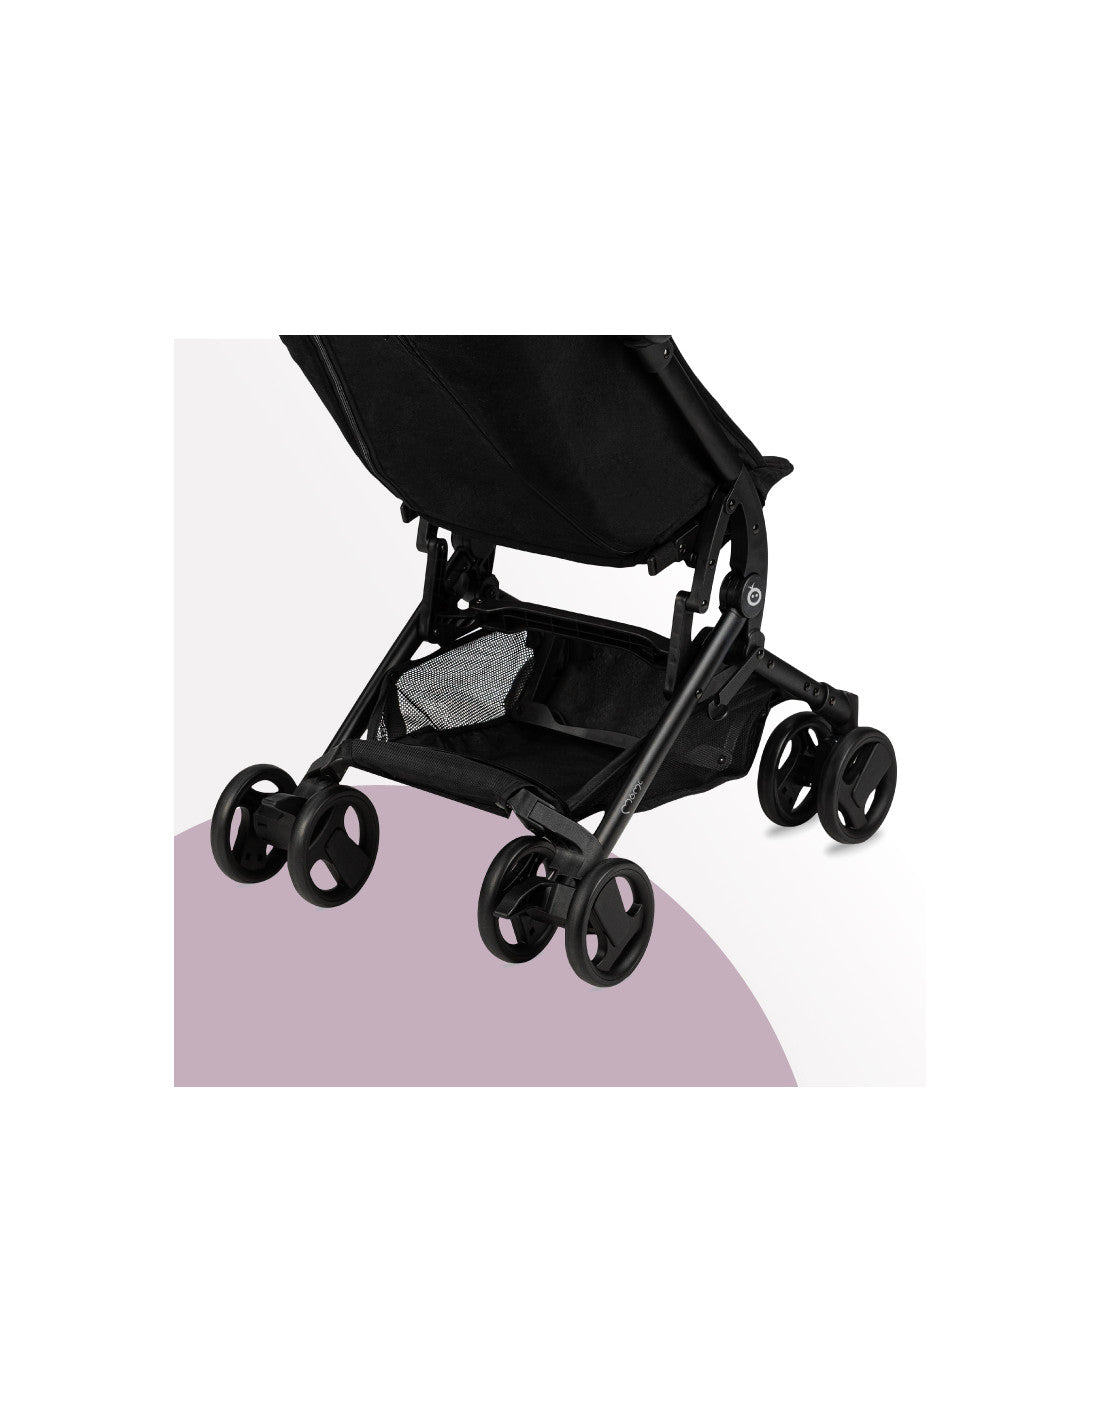 MoMi - GRACE Lightweight Stroller